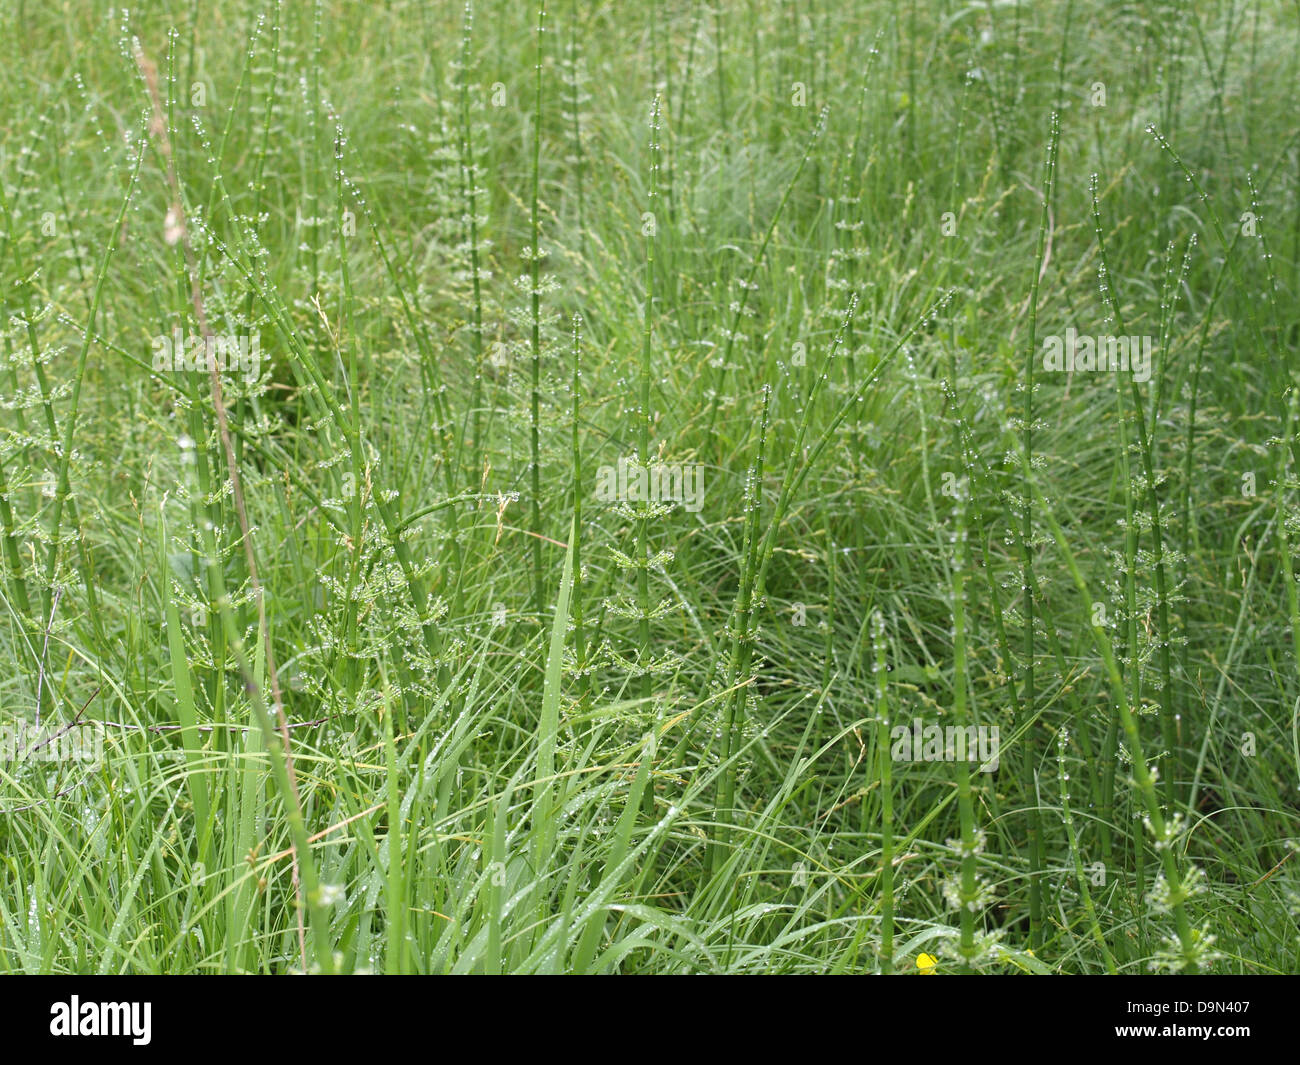 water horsetail / Equisetum fluviatile / Teich-Schachtelhalm Stock Photo